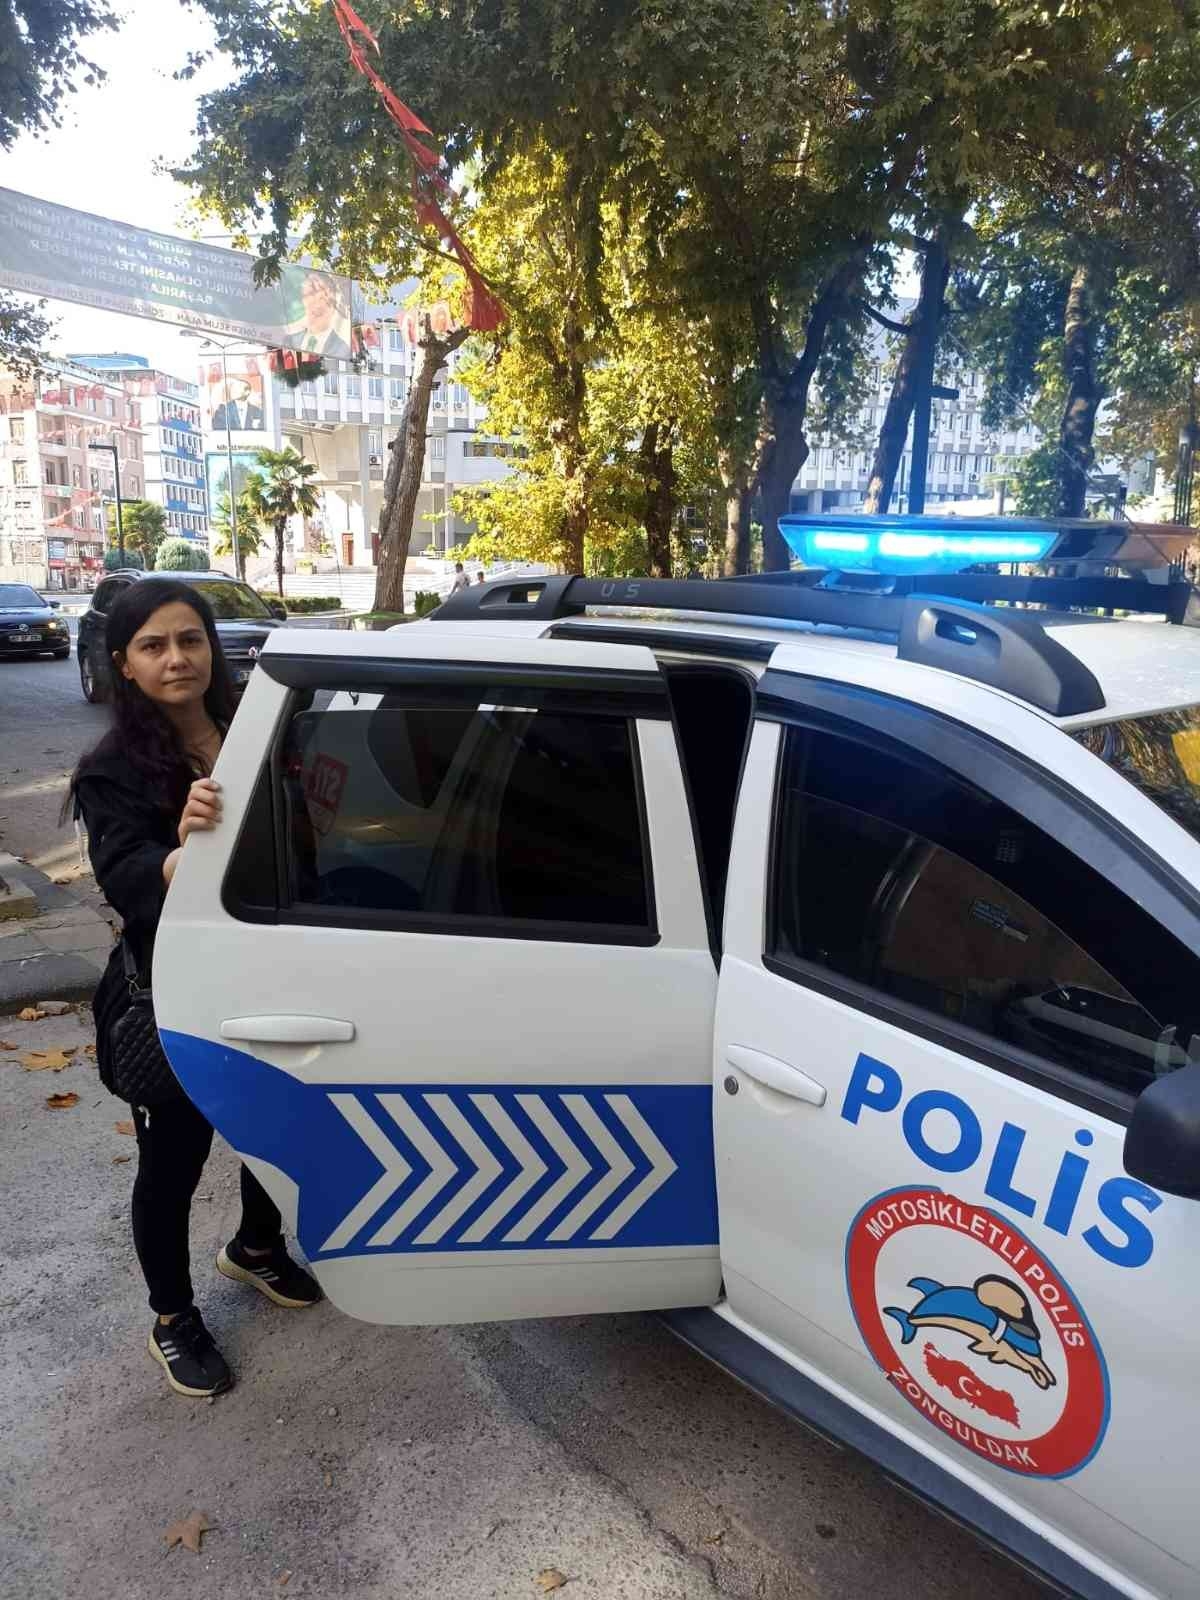 KPSS’ye geç kalan adayların imdadına polis yetişti
